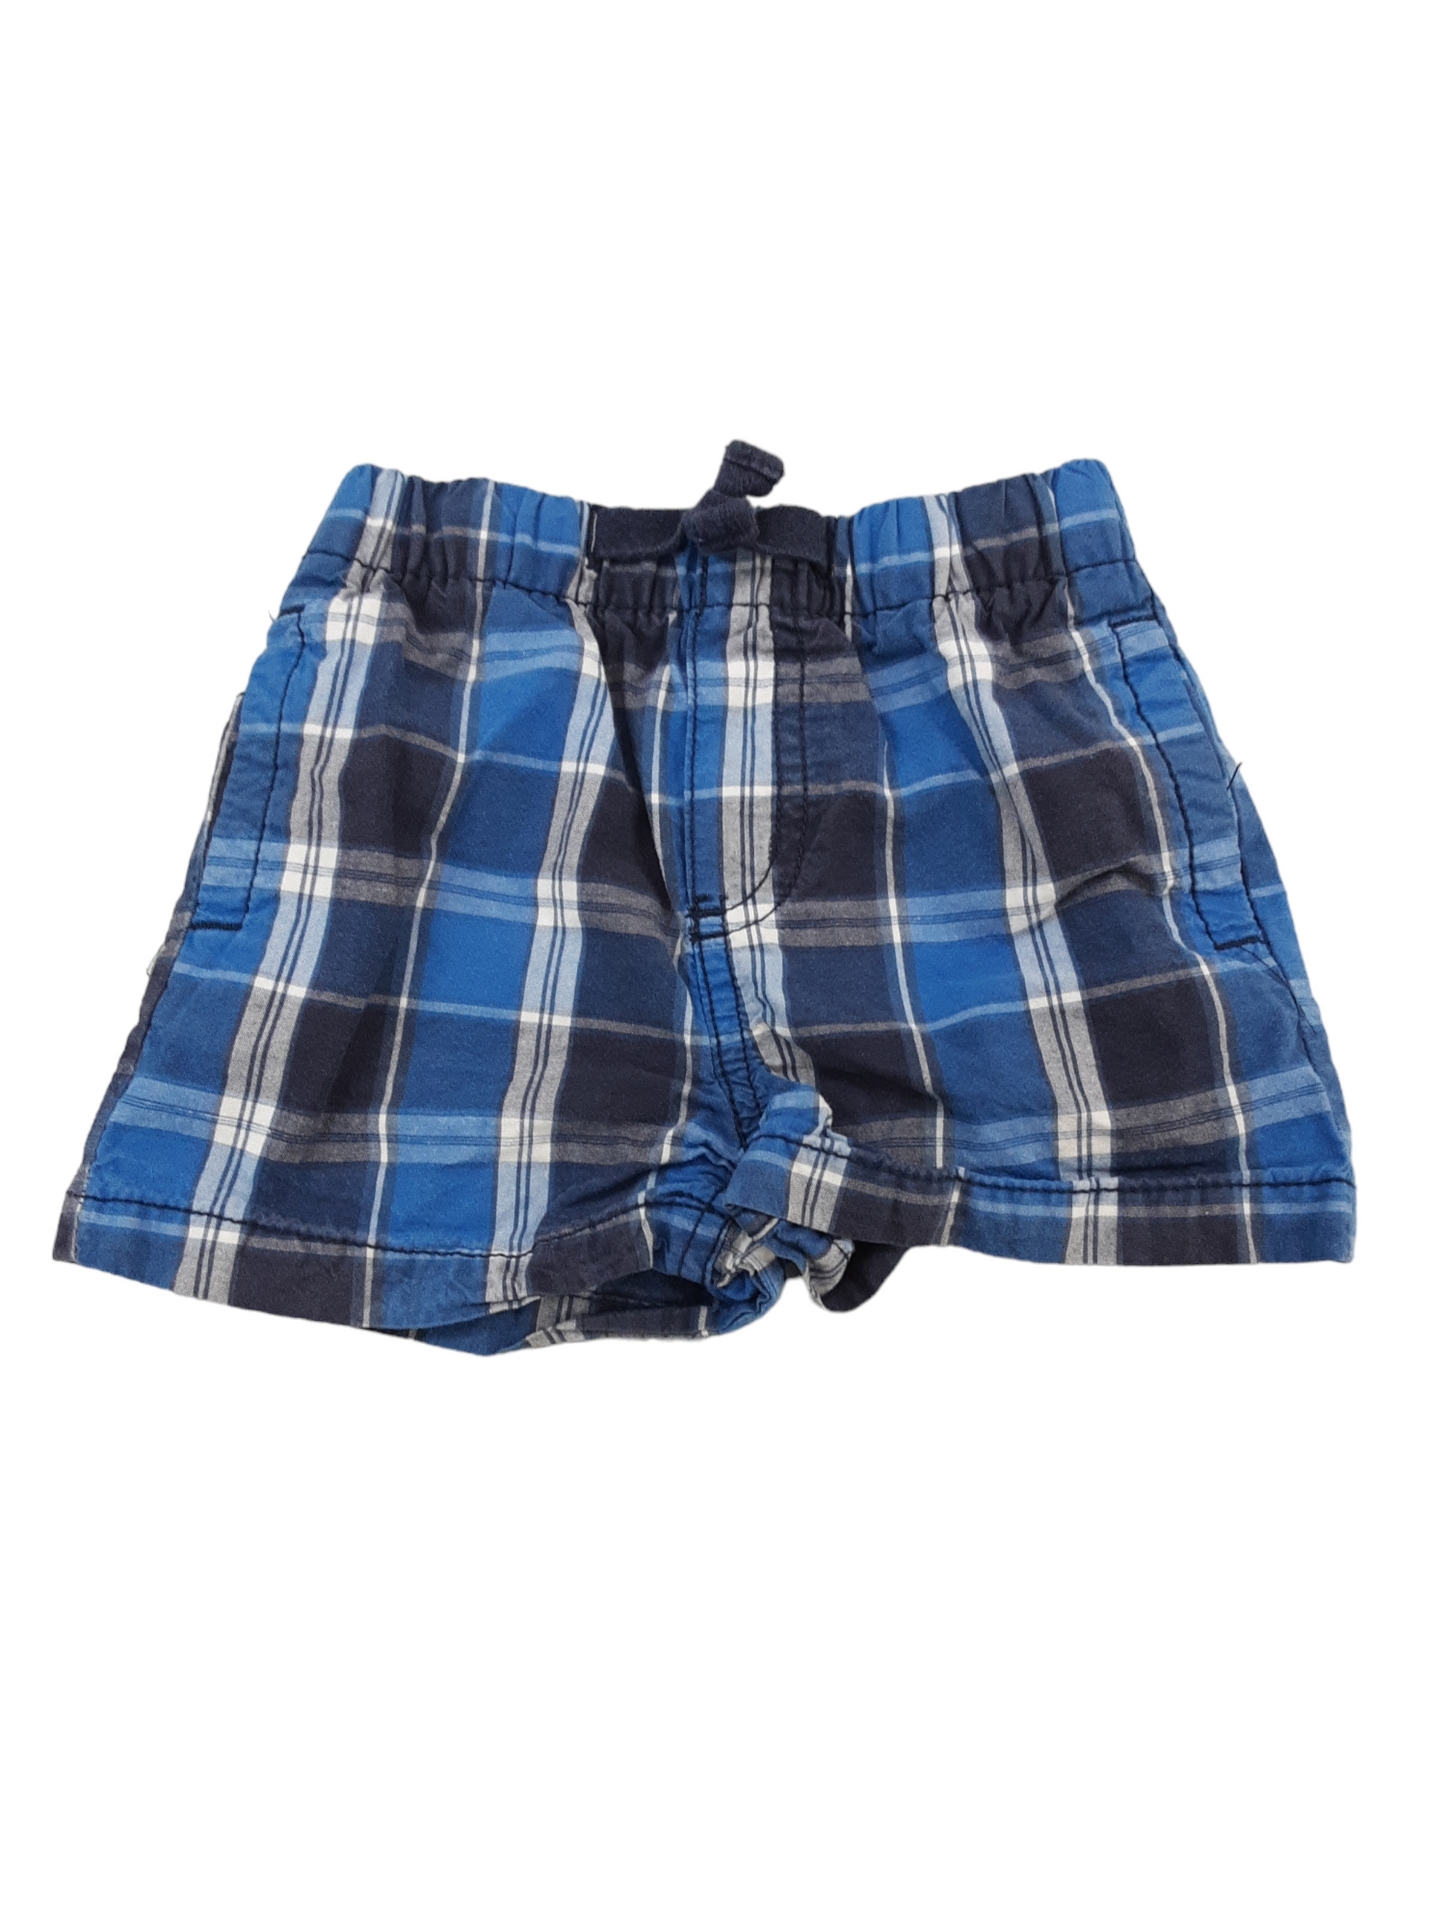 Blue plaid shorts size 12months